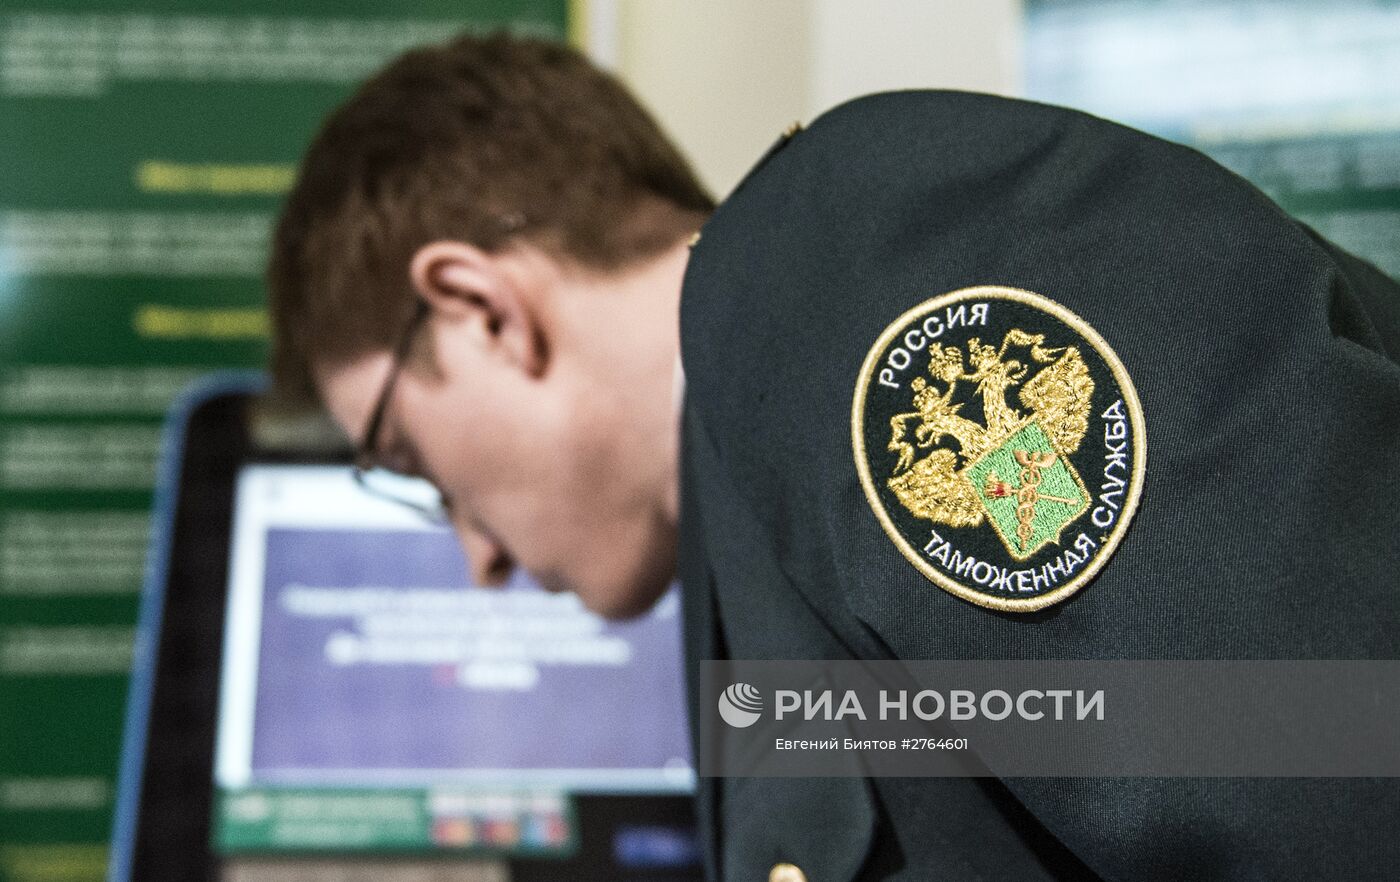 Ввод в эксплуатацию таможенного терминала в зале международного аэропорта "Домодедово"